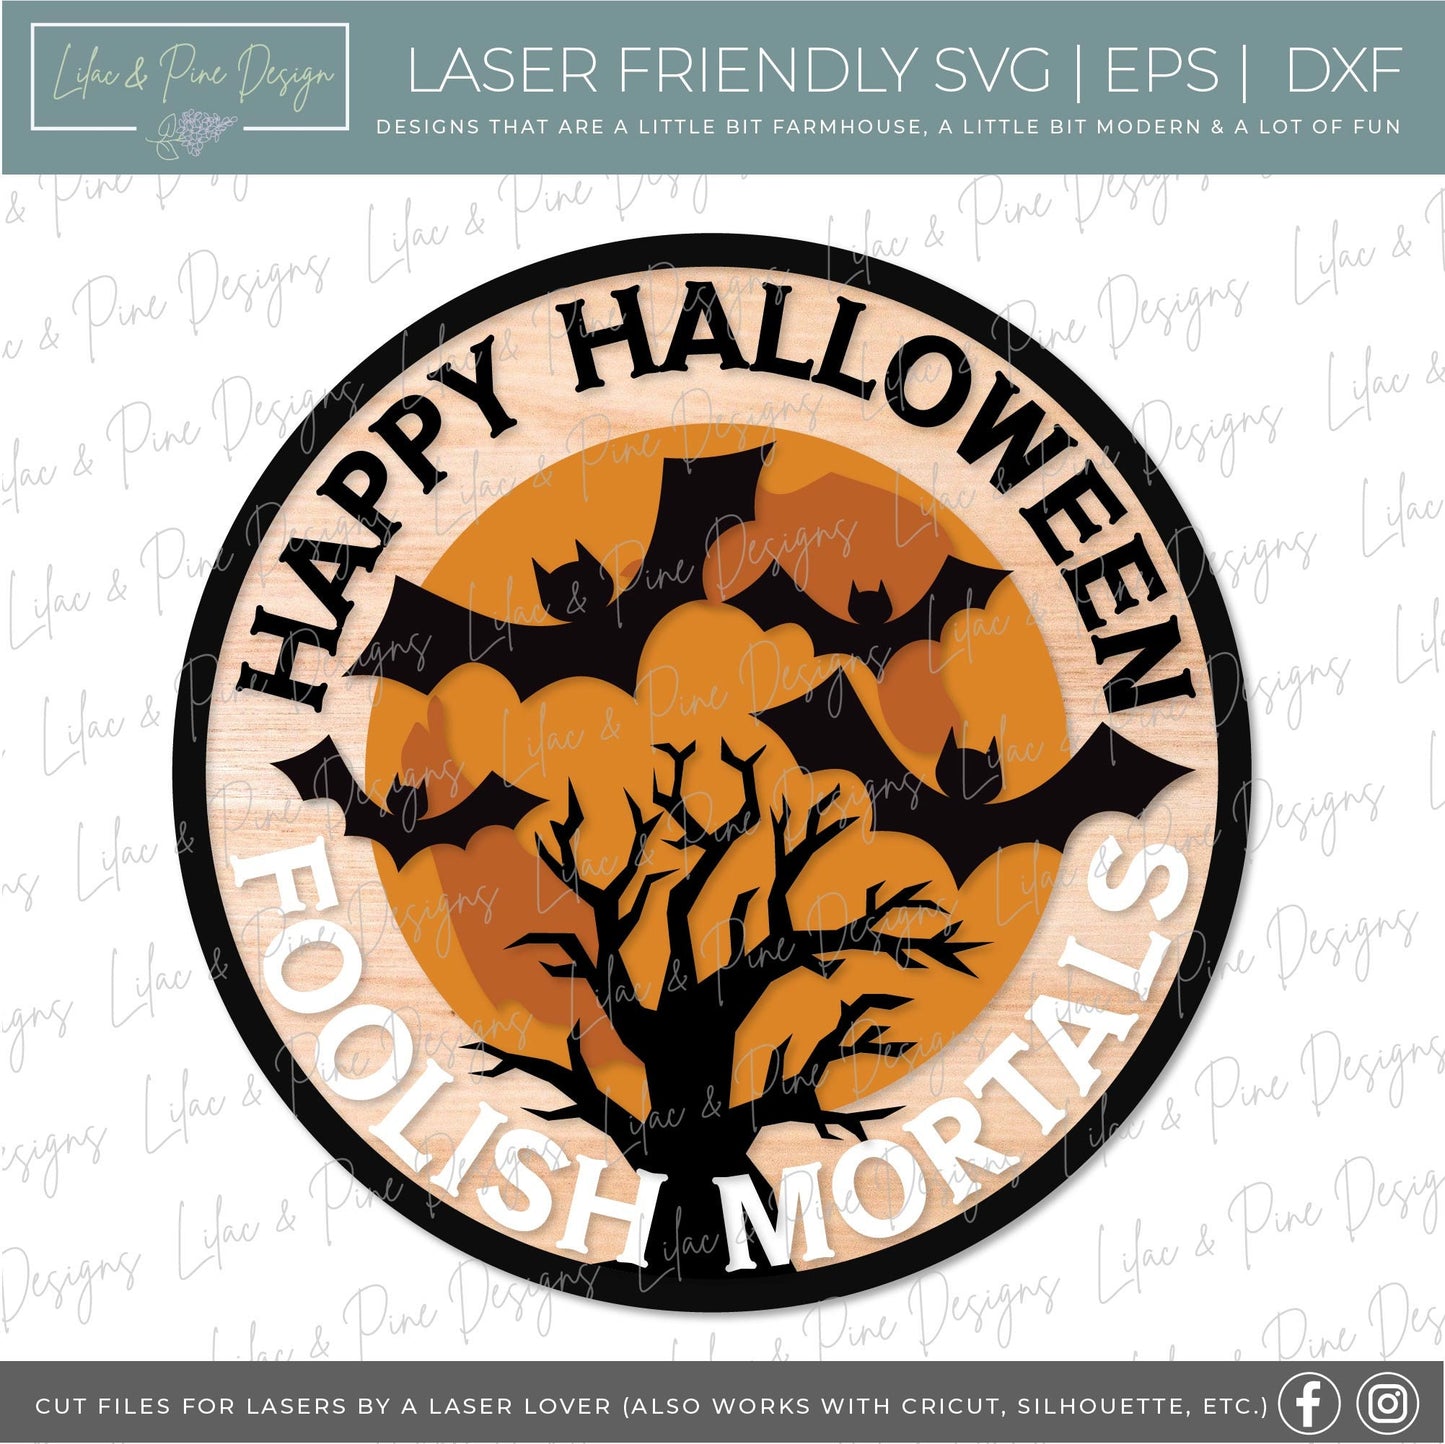 Halloween welcome sign bundle, Halloween door hanger SVG, spooky sign SVG, enter if you dare svg, ghost svg, Glowforge SVG, laser cut file